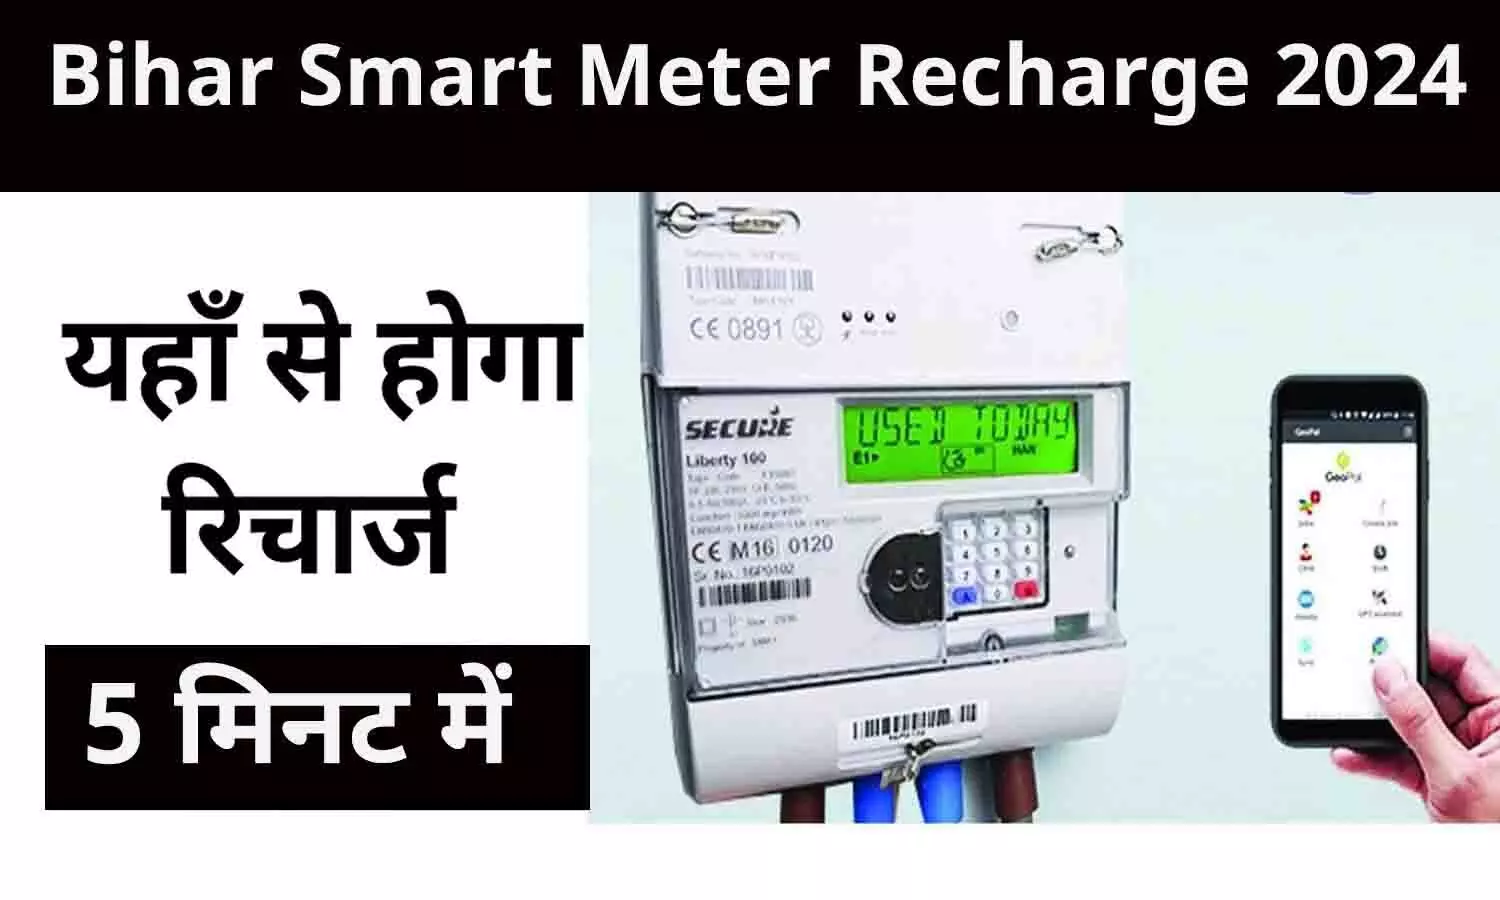 North Bihar Smart Meter Recharge: बड़ा ऐलान! अब बिहार के लोग ऐसे कर सकेंगे स्मार्ट मीटर रिचार्ज, जाने Latest Process